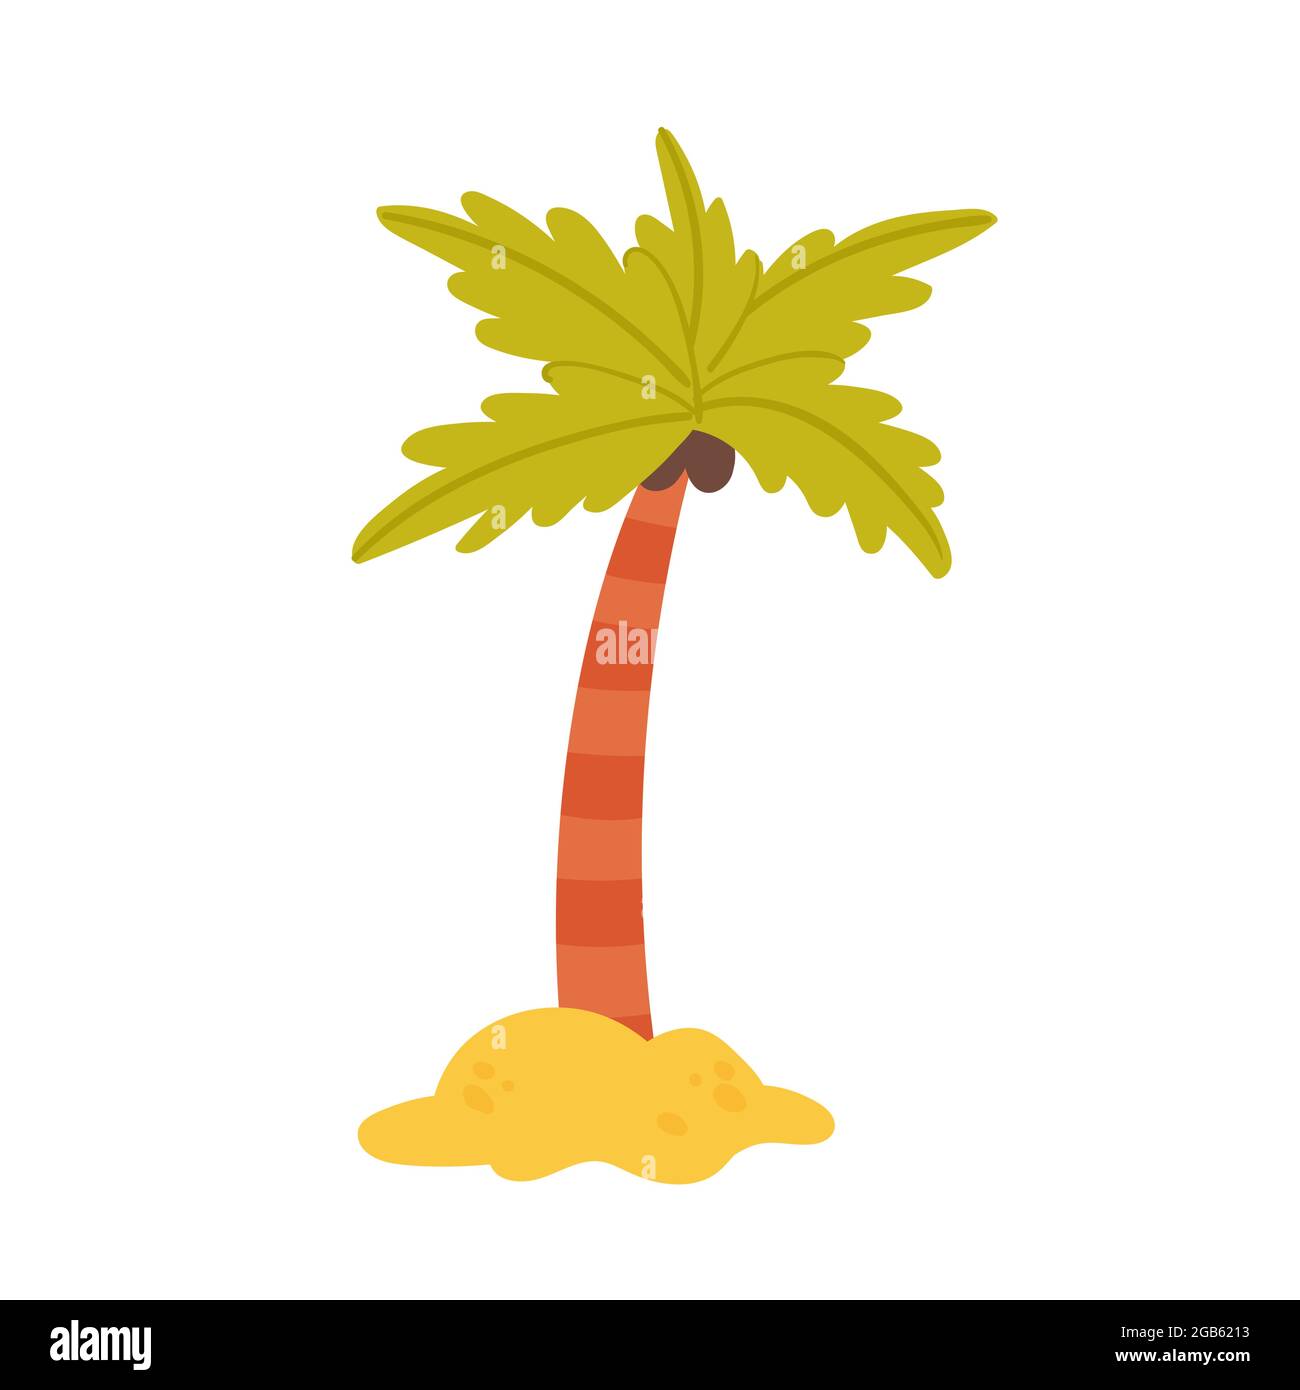 Kokospalme von tropischen Insel, Sommer Meer Strand Urlaub Vektor-Illustration. Cartoon Strandpalme, niedliche exotische Natur am Meer isoliert auf weiß Stock Vektor